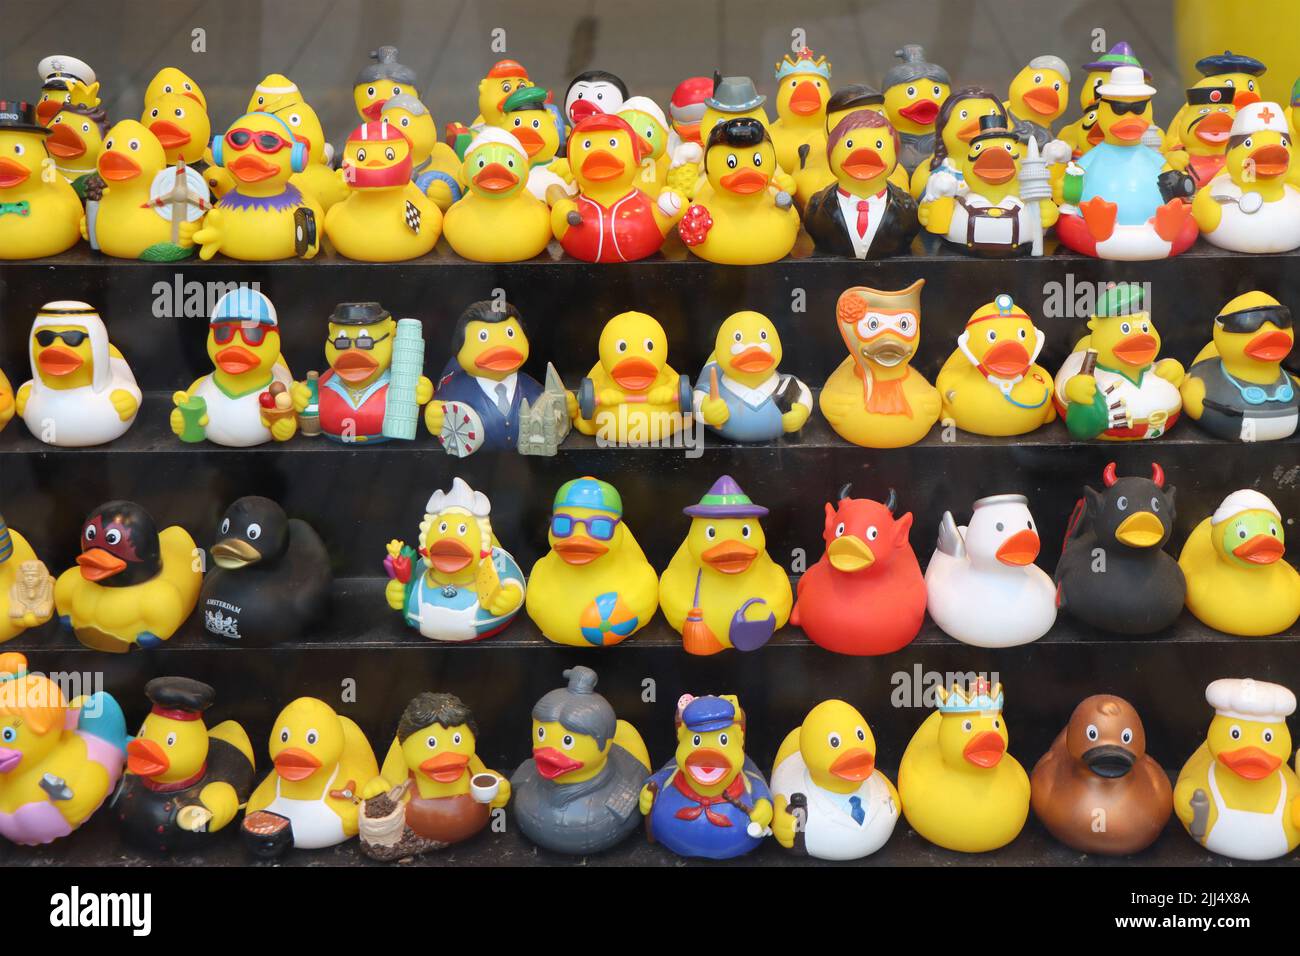 Ámsterdam, Países Bajos - 23 de junio de 2022: Tienda de pato de Ámsterdam. Variedad de divertidos patos de goma como un recuerdo en Ámsterdam. Foto de stock